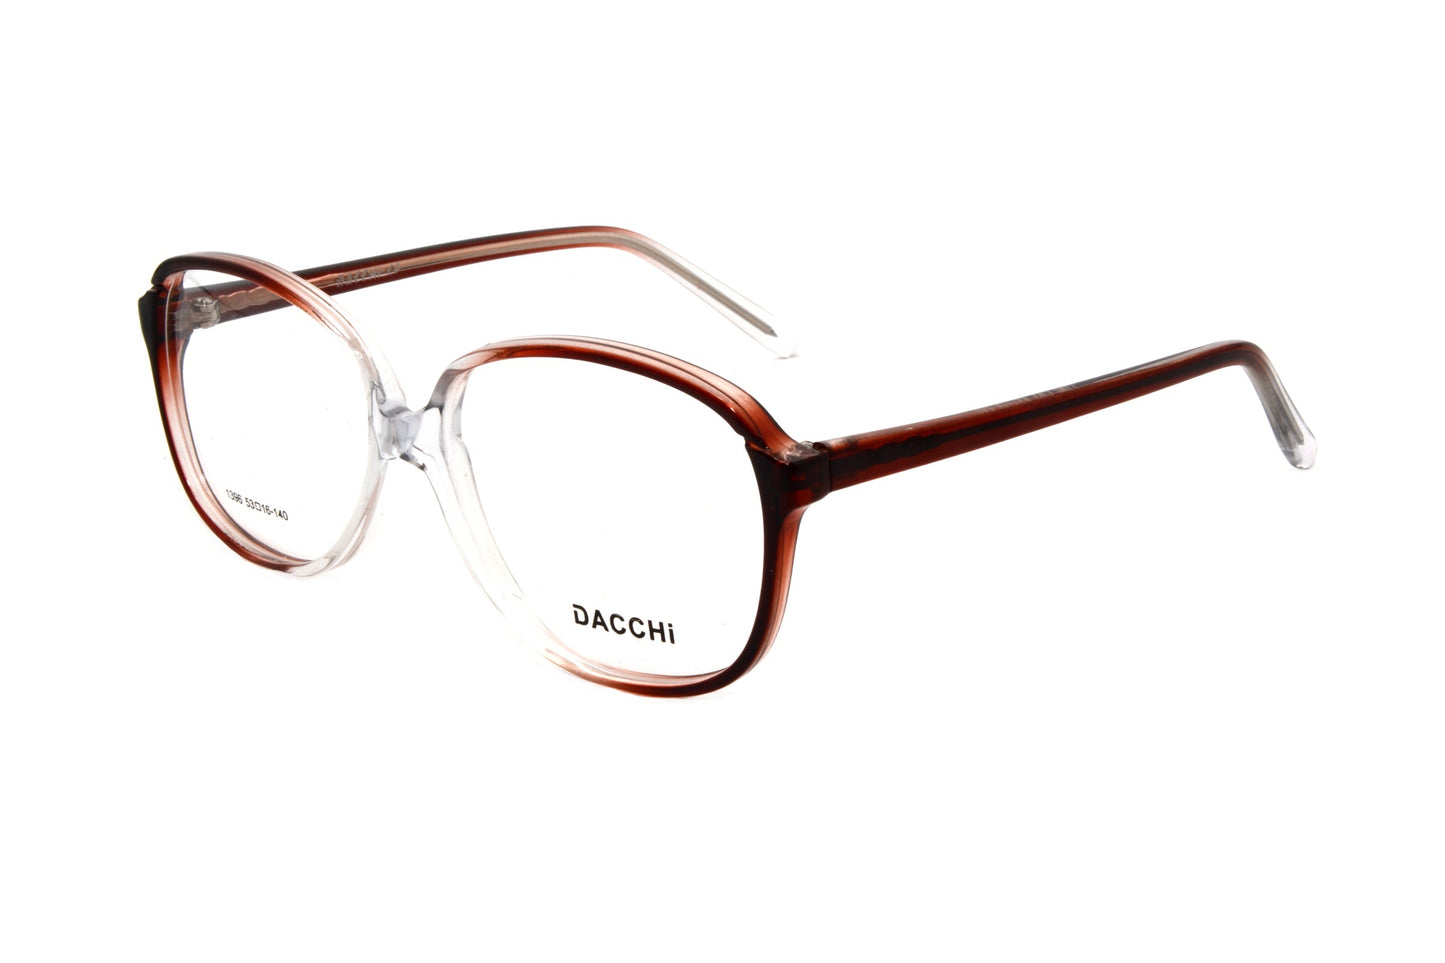 Dacchi eyewear 1396 C92